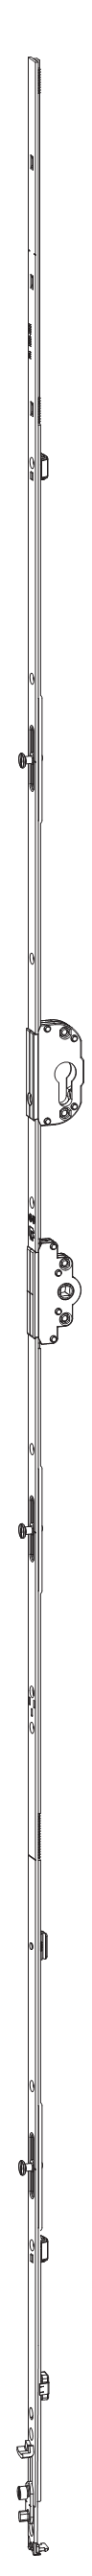 GU-ITALIA -  Cremonese UNI-JET anta ribalta altezza maniglia fissa con foro cilindro sopra la maniglia e quadro - gr / dim. 2190 - entrata 45 - alt. man. 950 - lbb/hbb 2101 - 2350